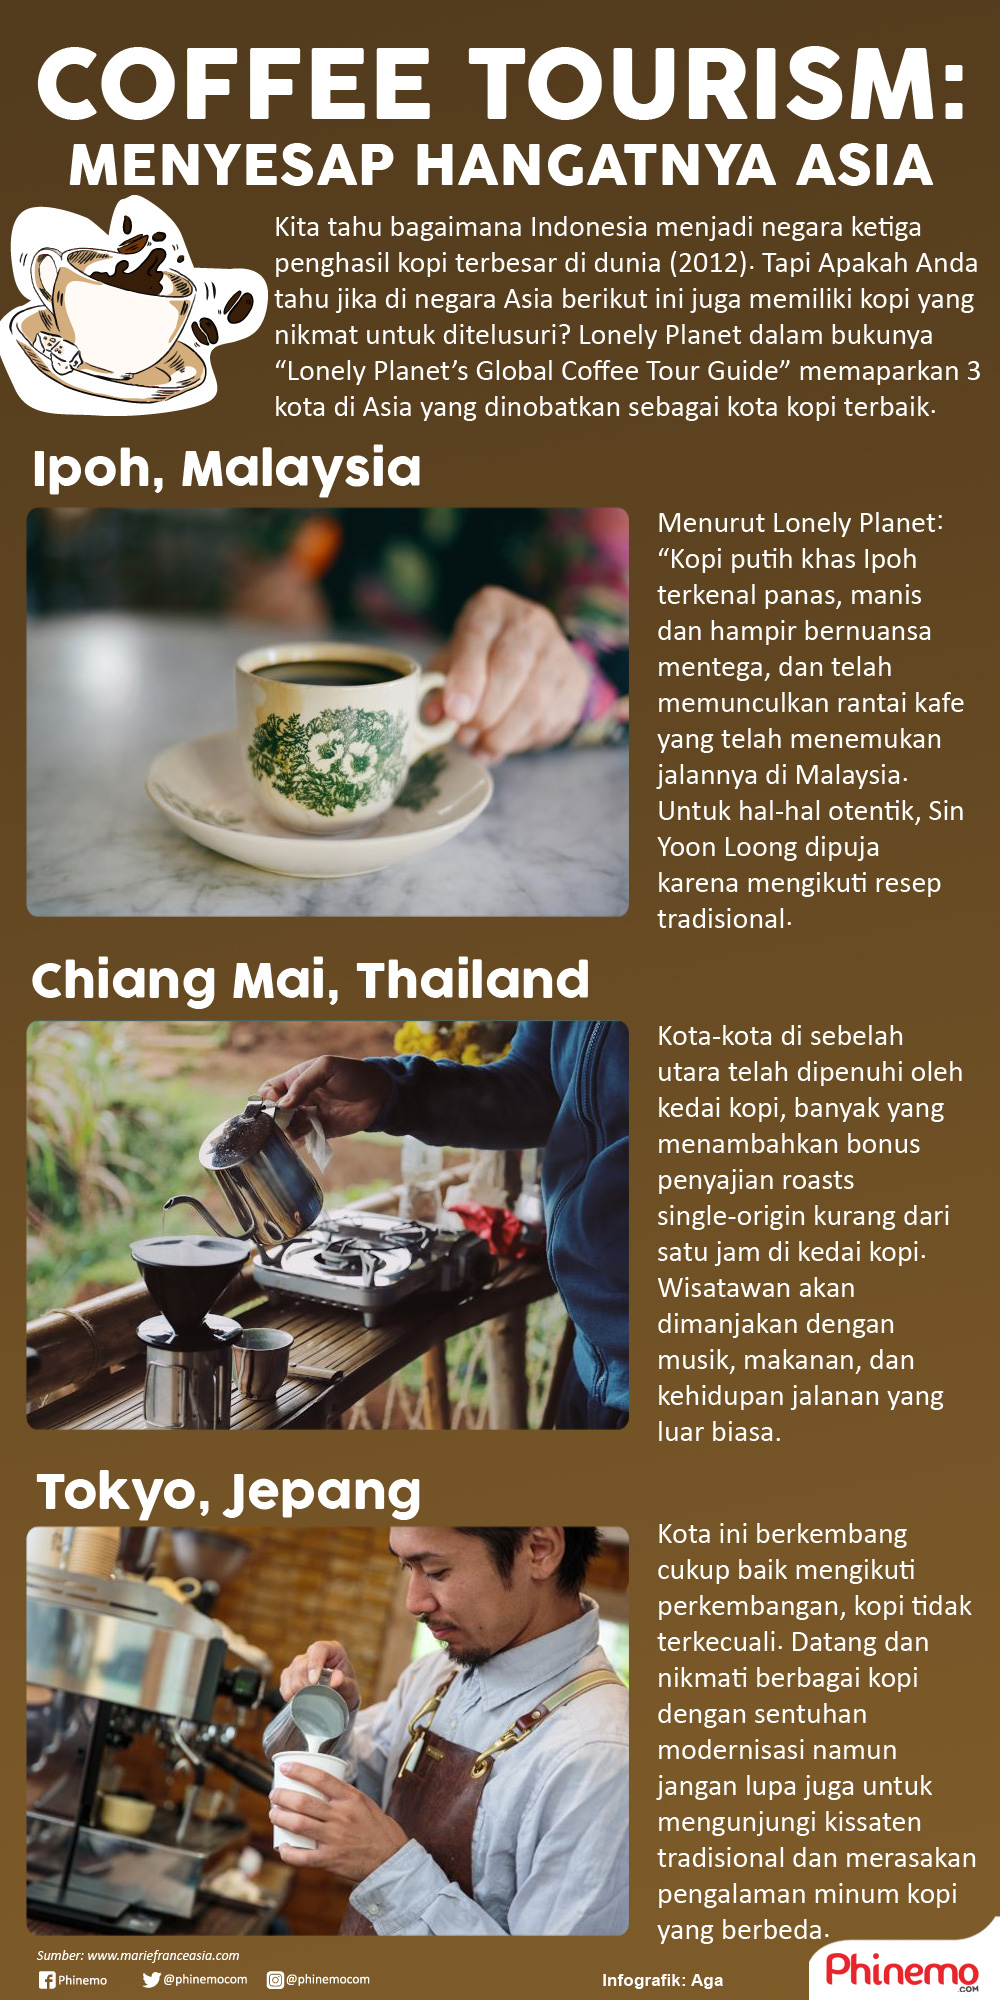 Infografik Coffee Torusim, Menyesap Hangatnya Asia Melalui Secangkir Kopi.